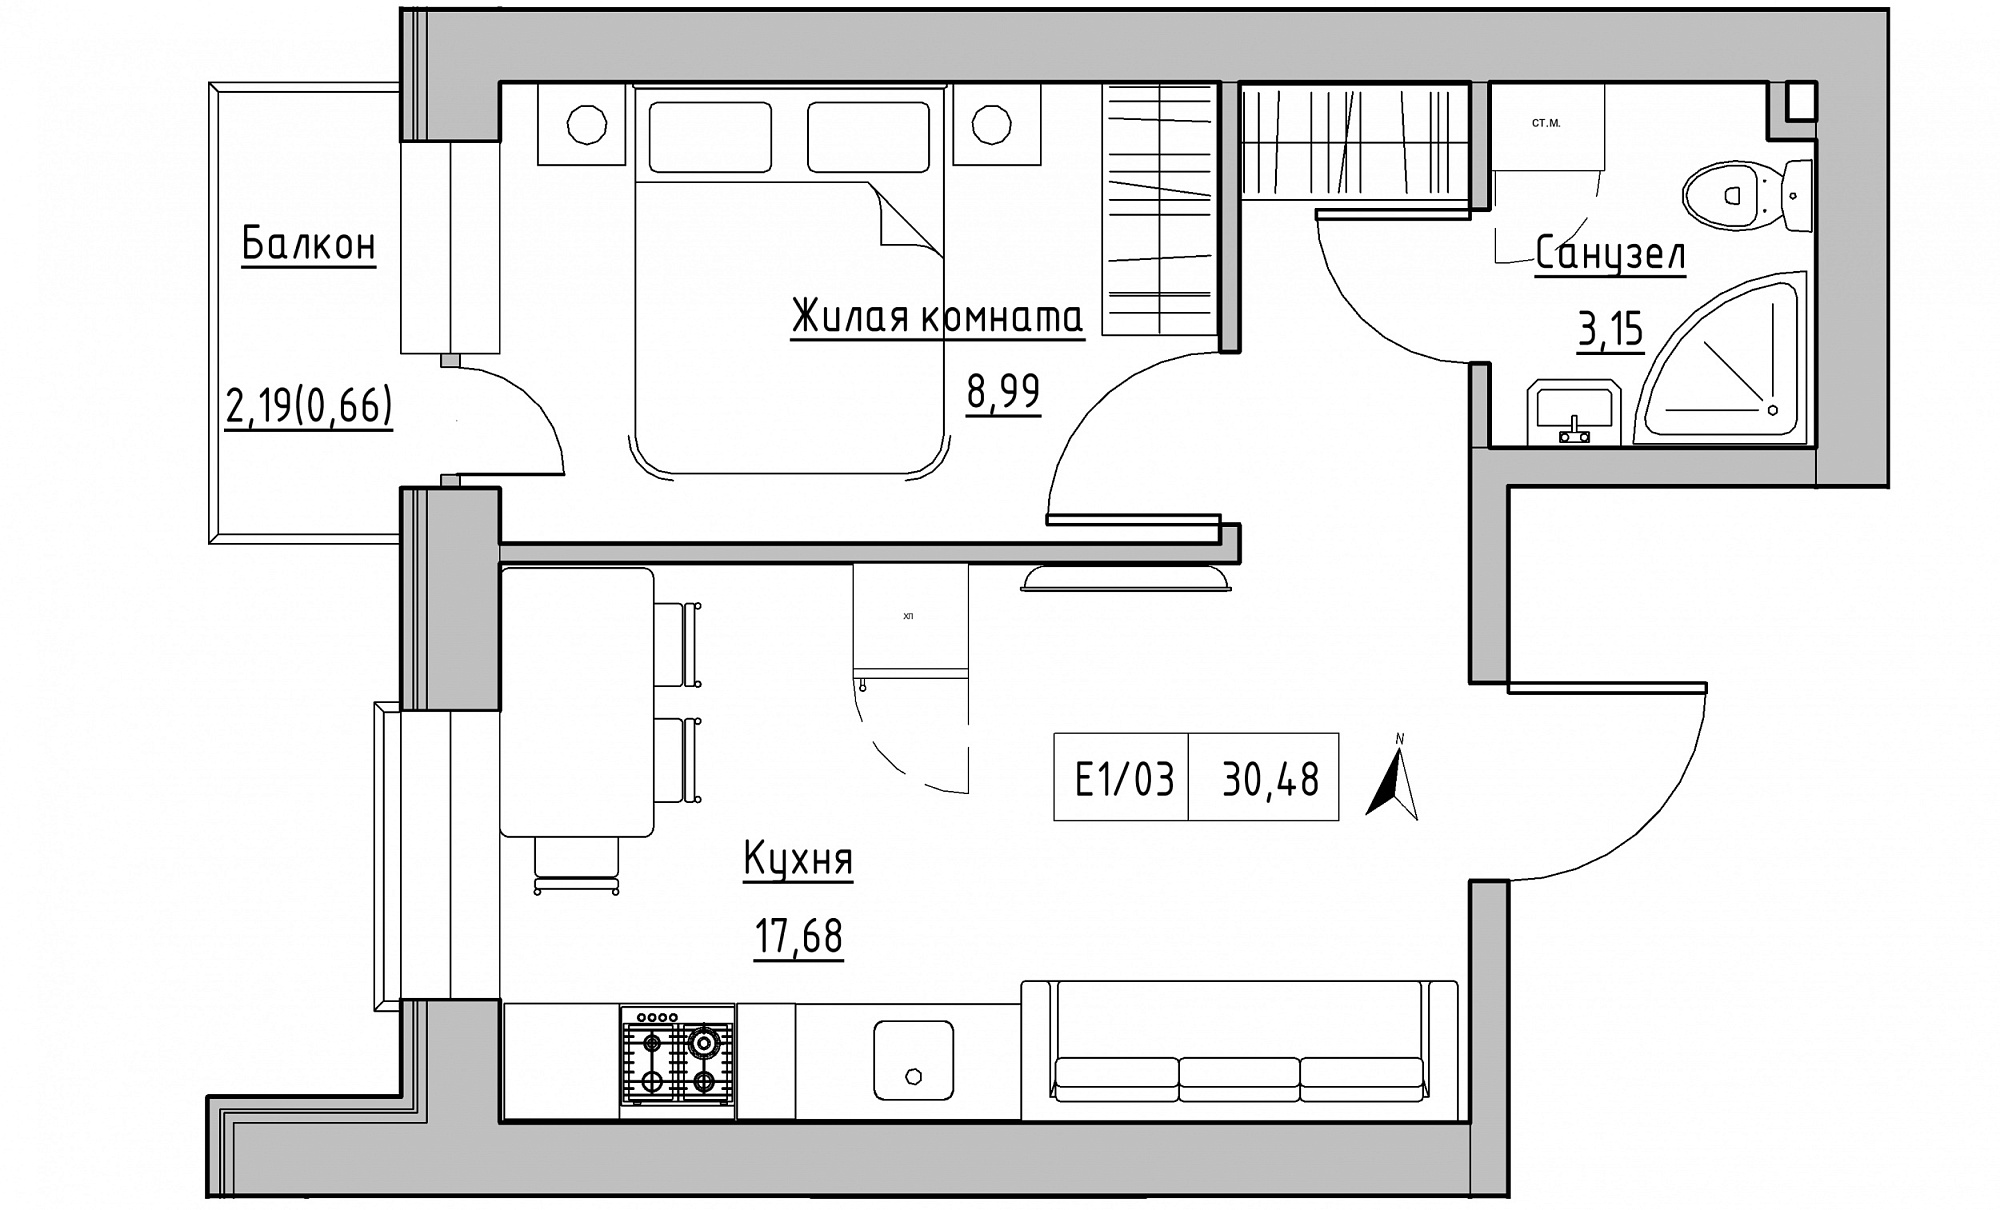 Планування 1-к квартира площею 30.48м2, KS-015-05/0003.